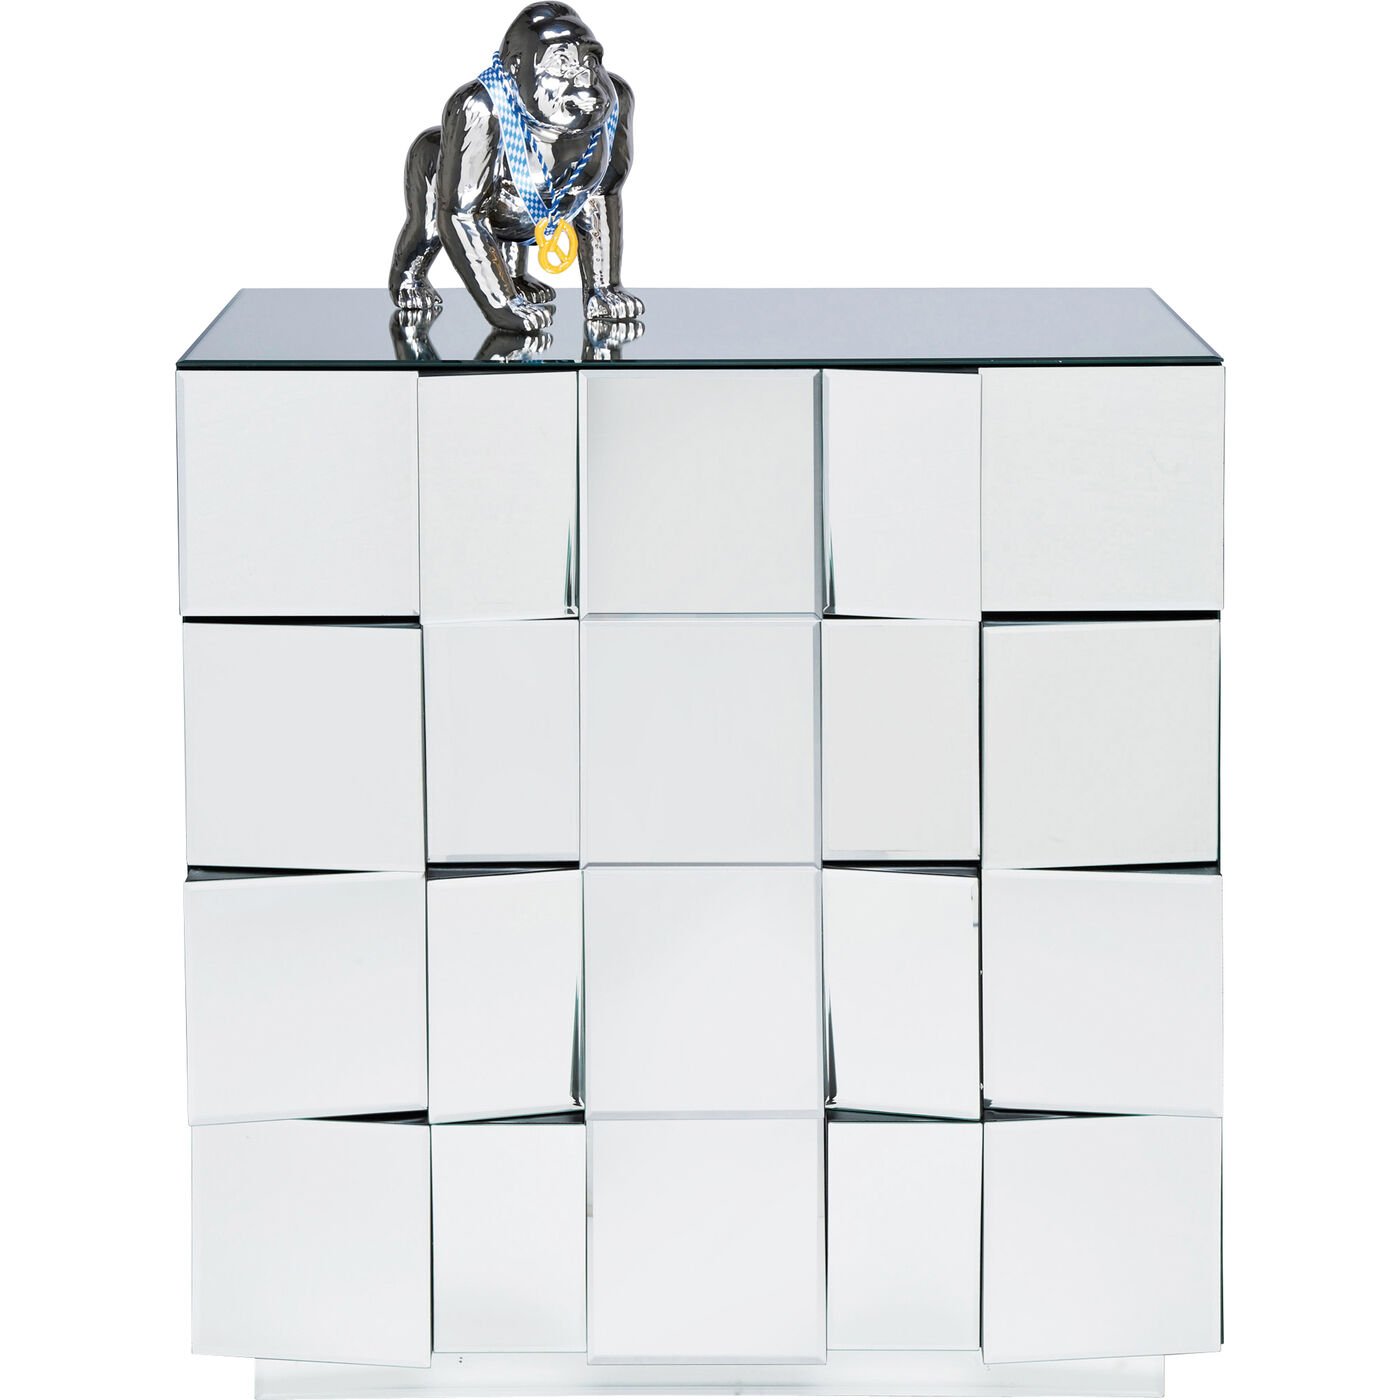 Verspiegelte Kommode Illusion Big Cube Spiegel Würfel elegantes Designobjekt Spiegelmöbel Designmöbel exklusiv Laden Geschäft Luxusmöbel